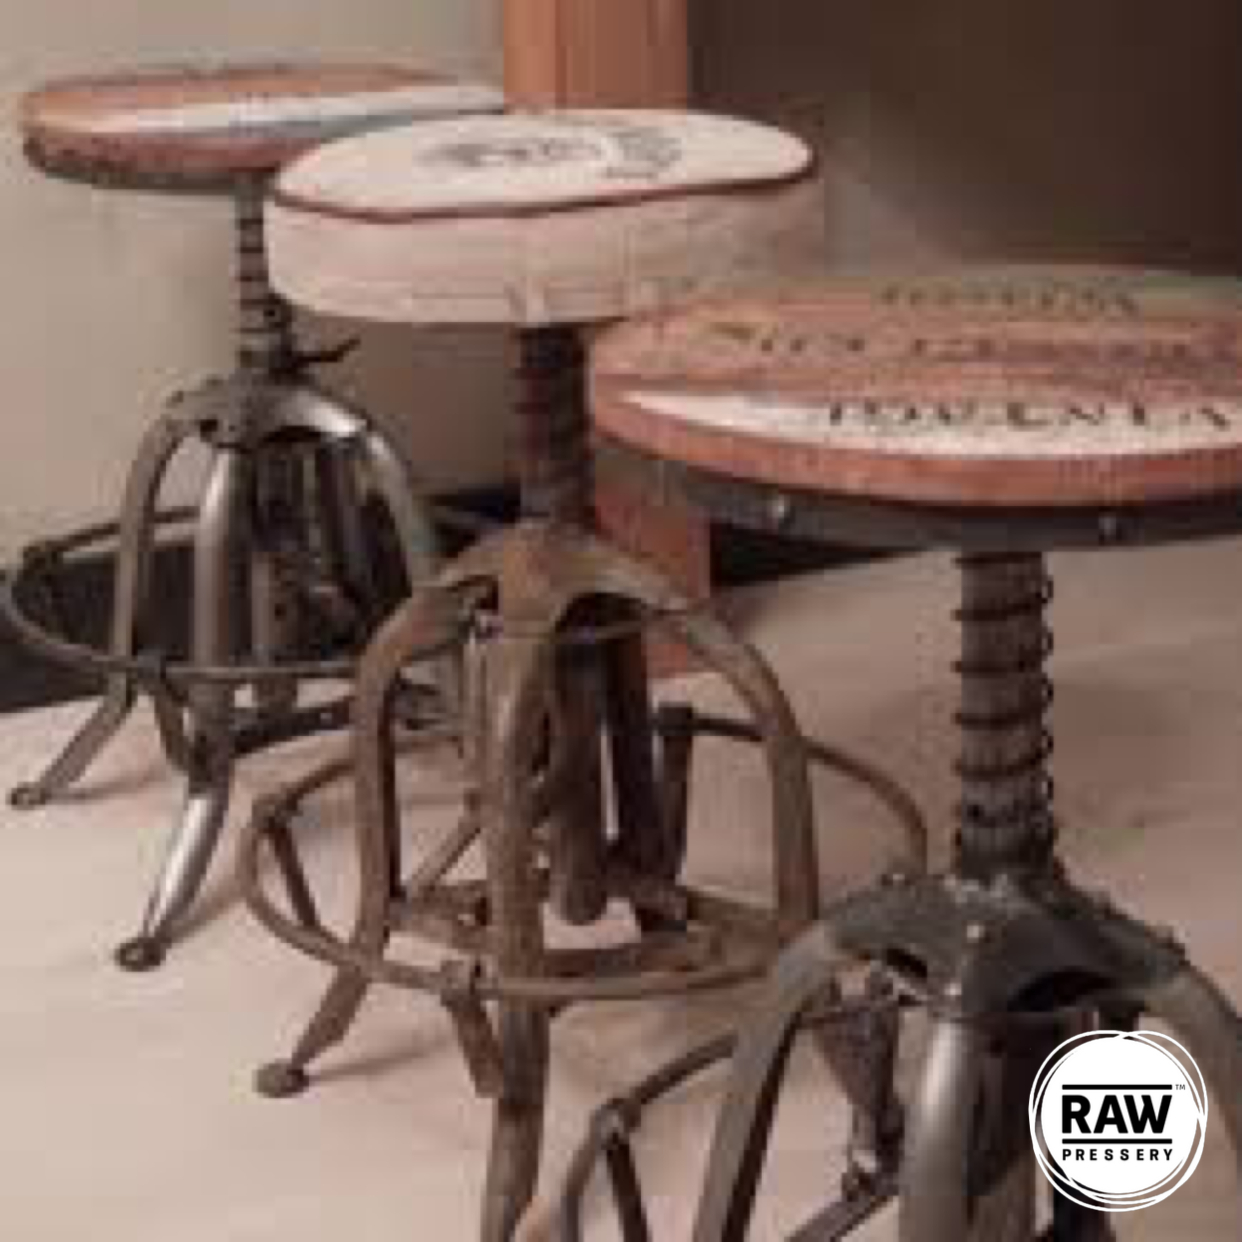 Antique bar stools